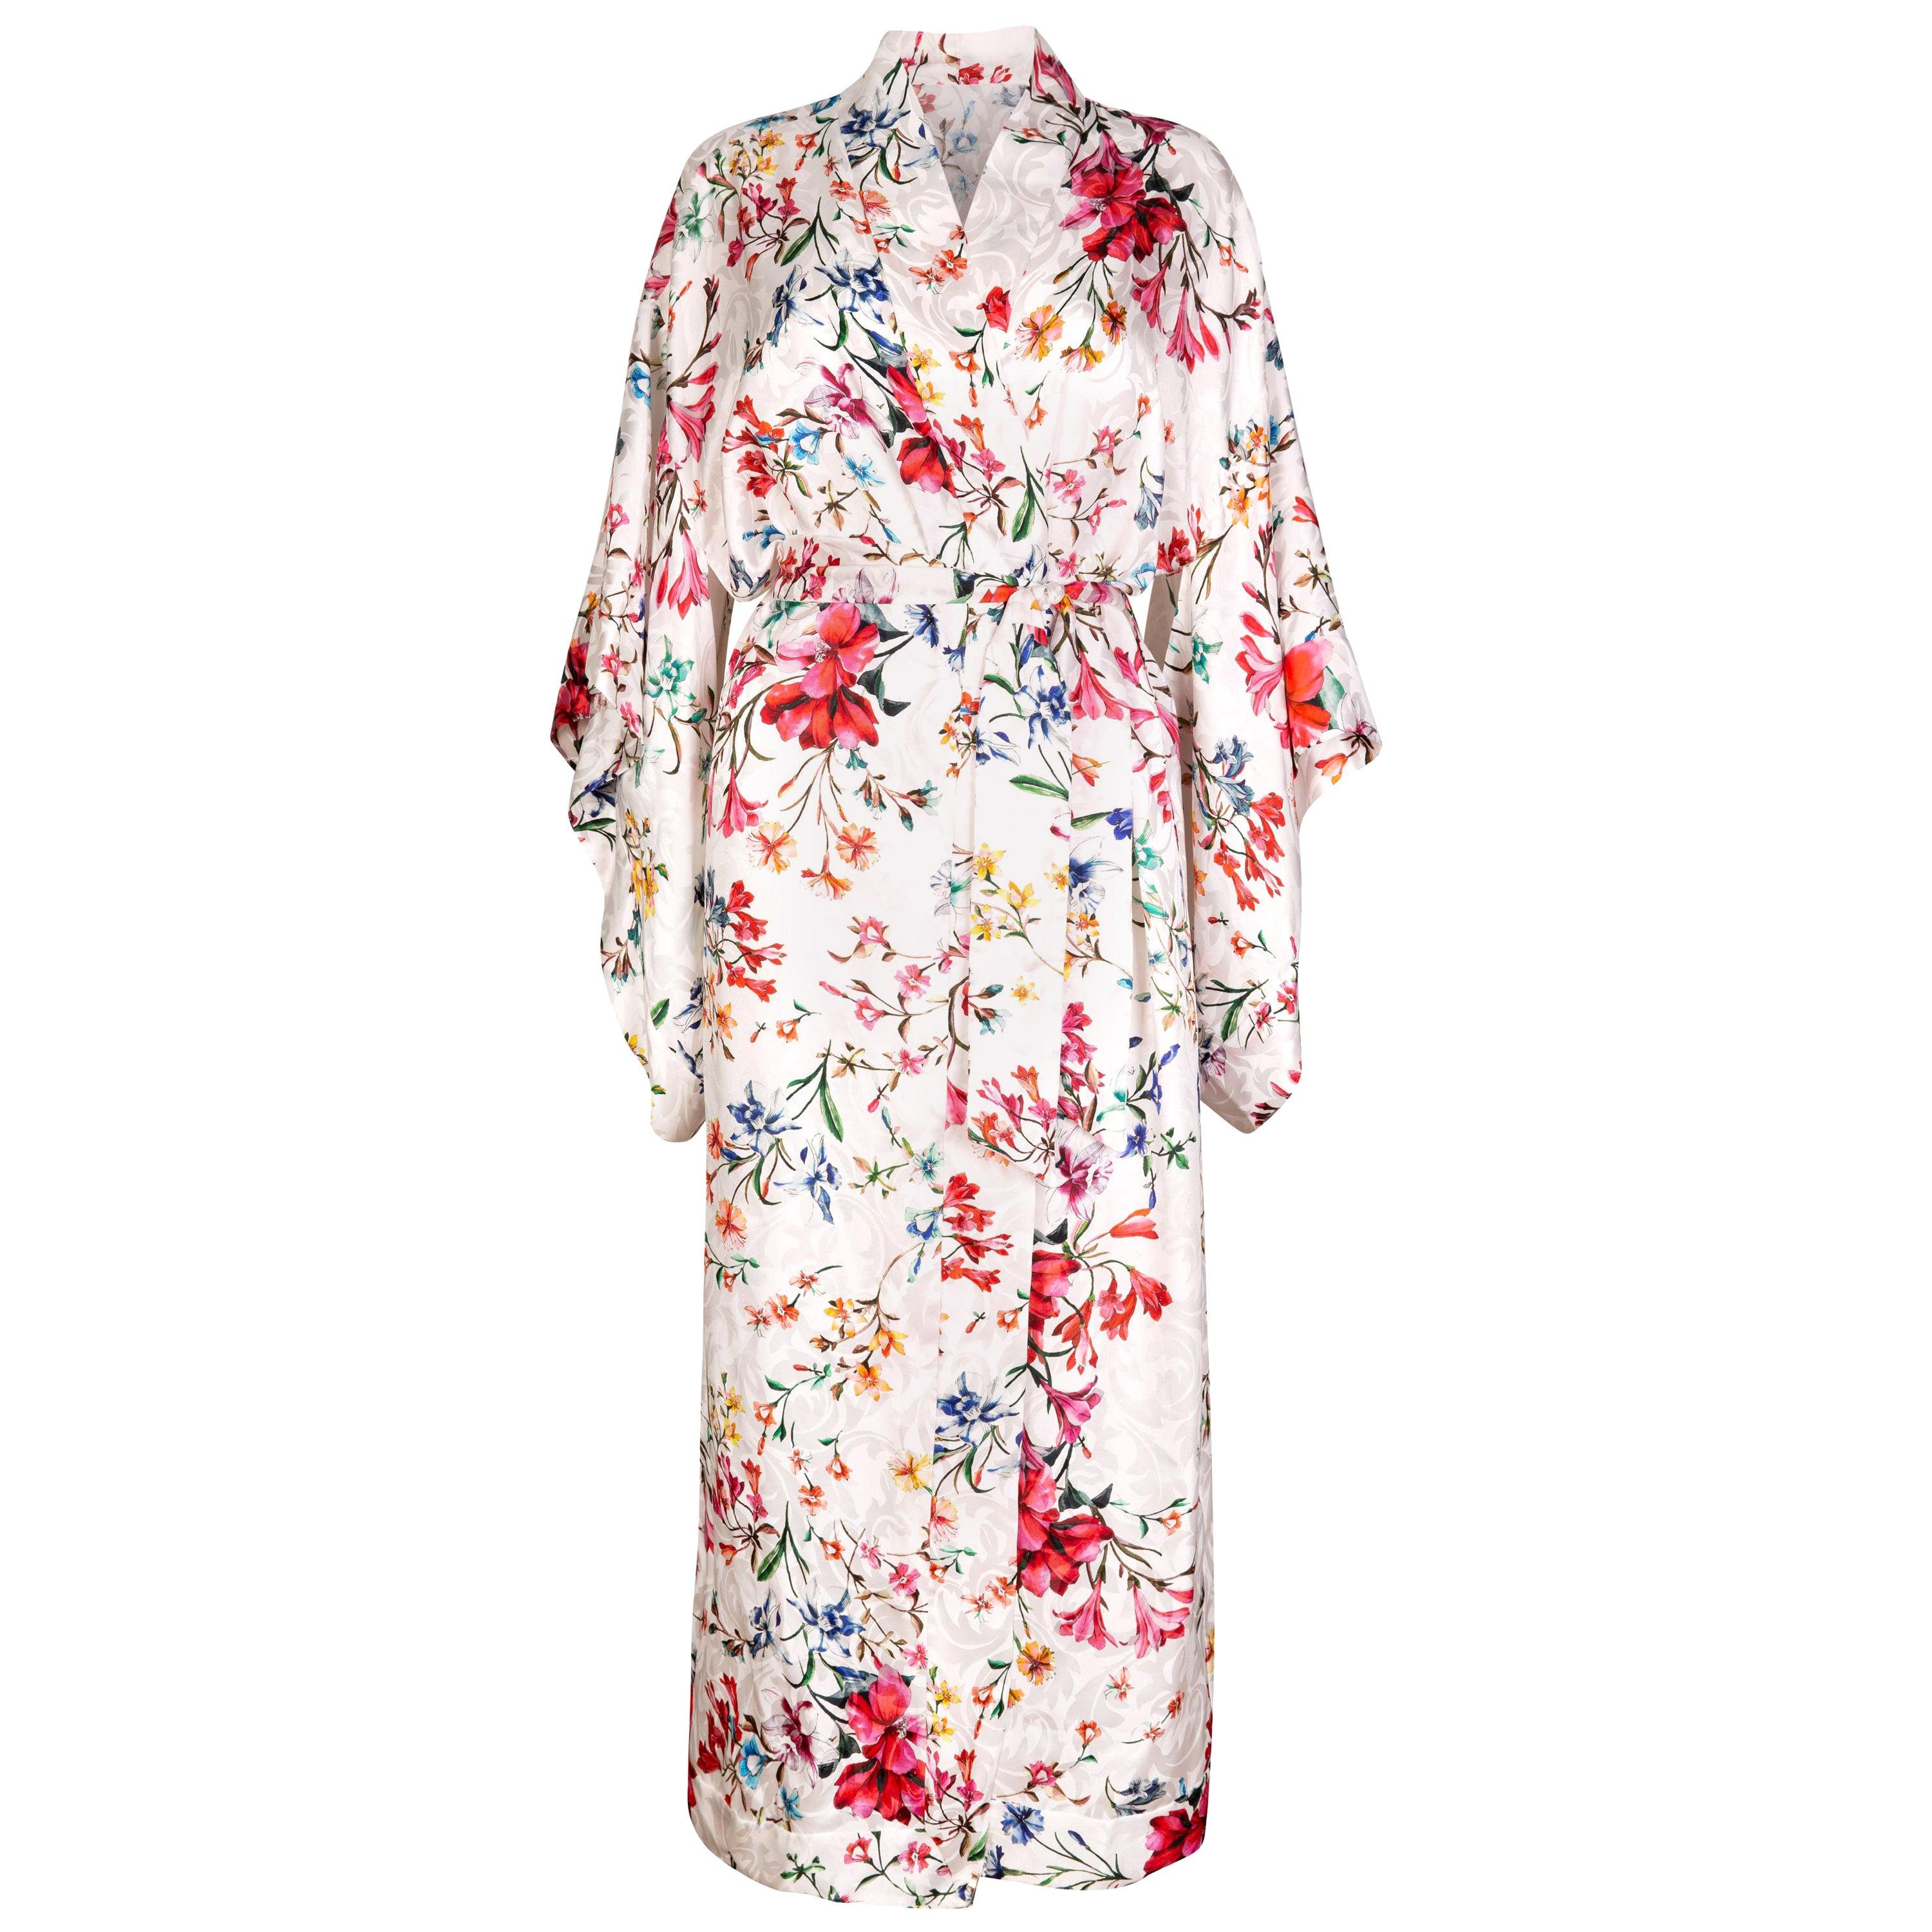 Robe kimono à fleurs Verheyen London en satin de soie italien - Taille unique 